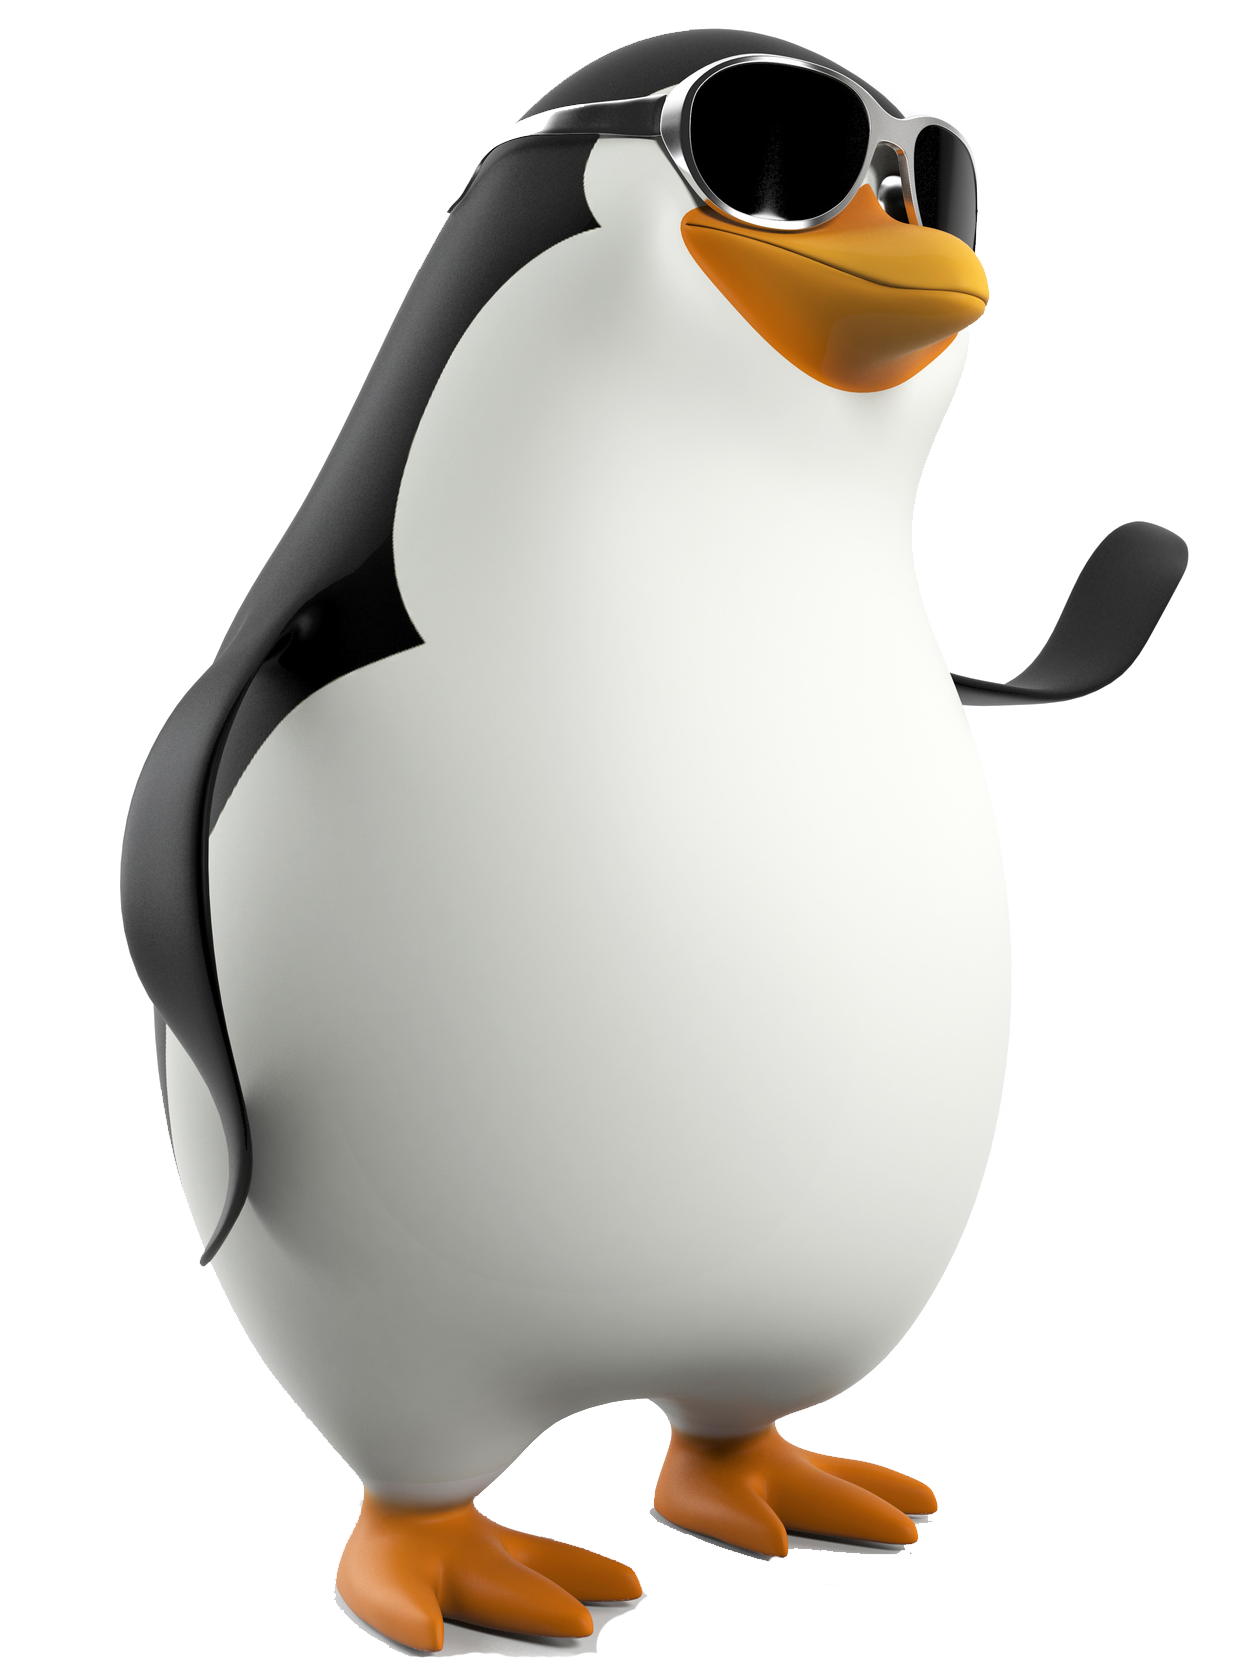 Penguins of Madagascar Download Transparent PNG Image